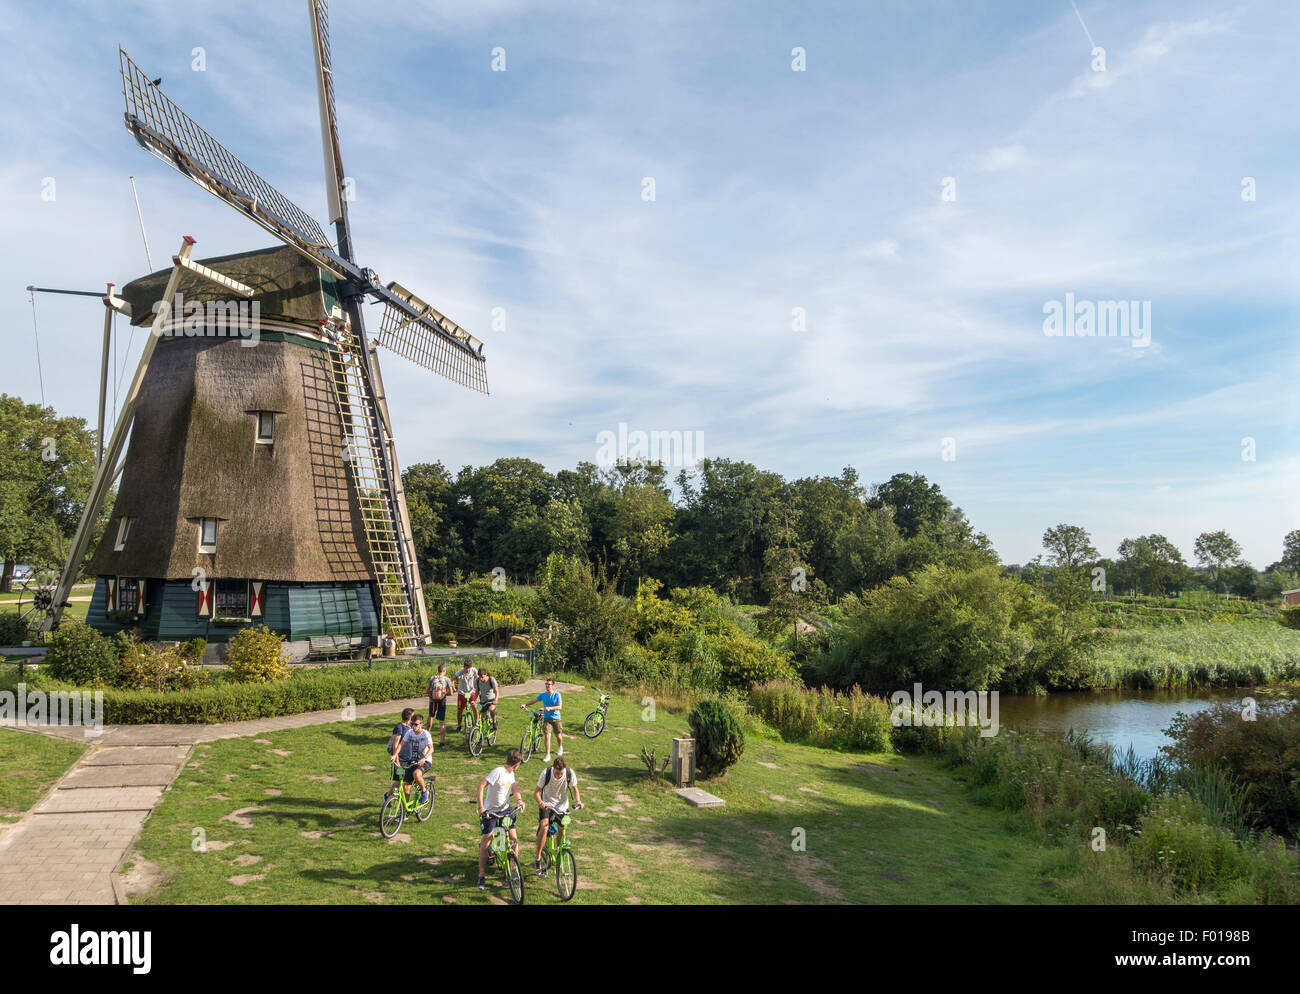 Amsterdam, die Rieker-Windmühle, de Riekermolen, an der Amstel, wo Rembrandt zum Skizzieren. Junge tour Gruppe auf dem Fahrrad. Stockfoto